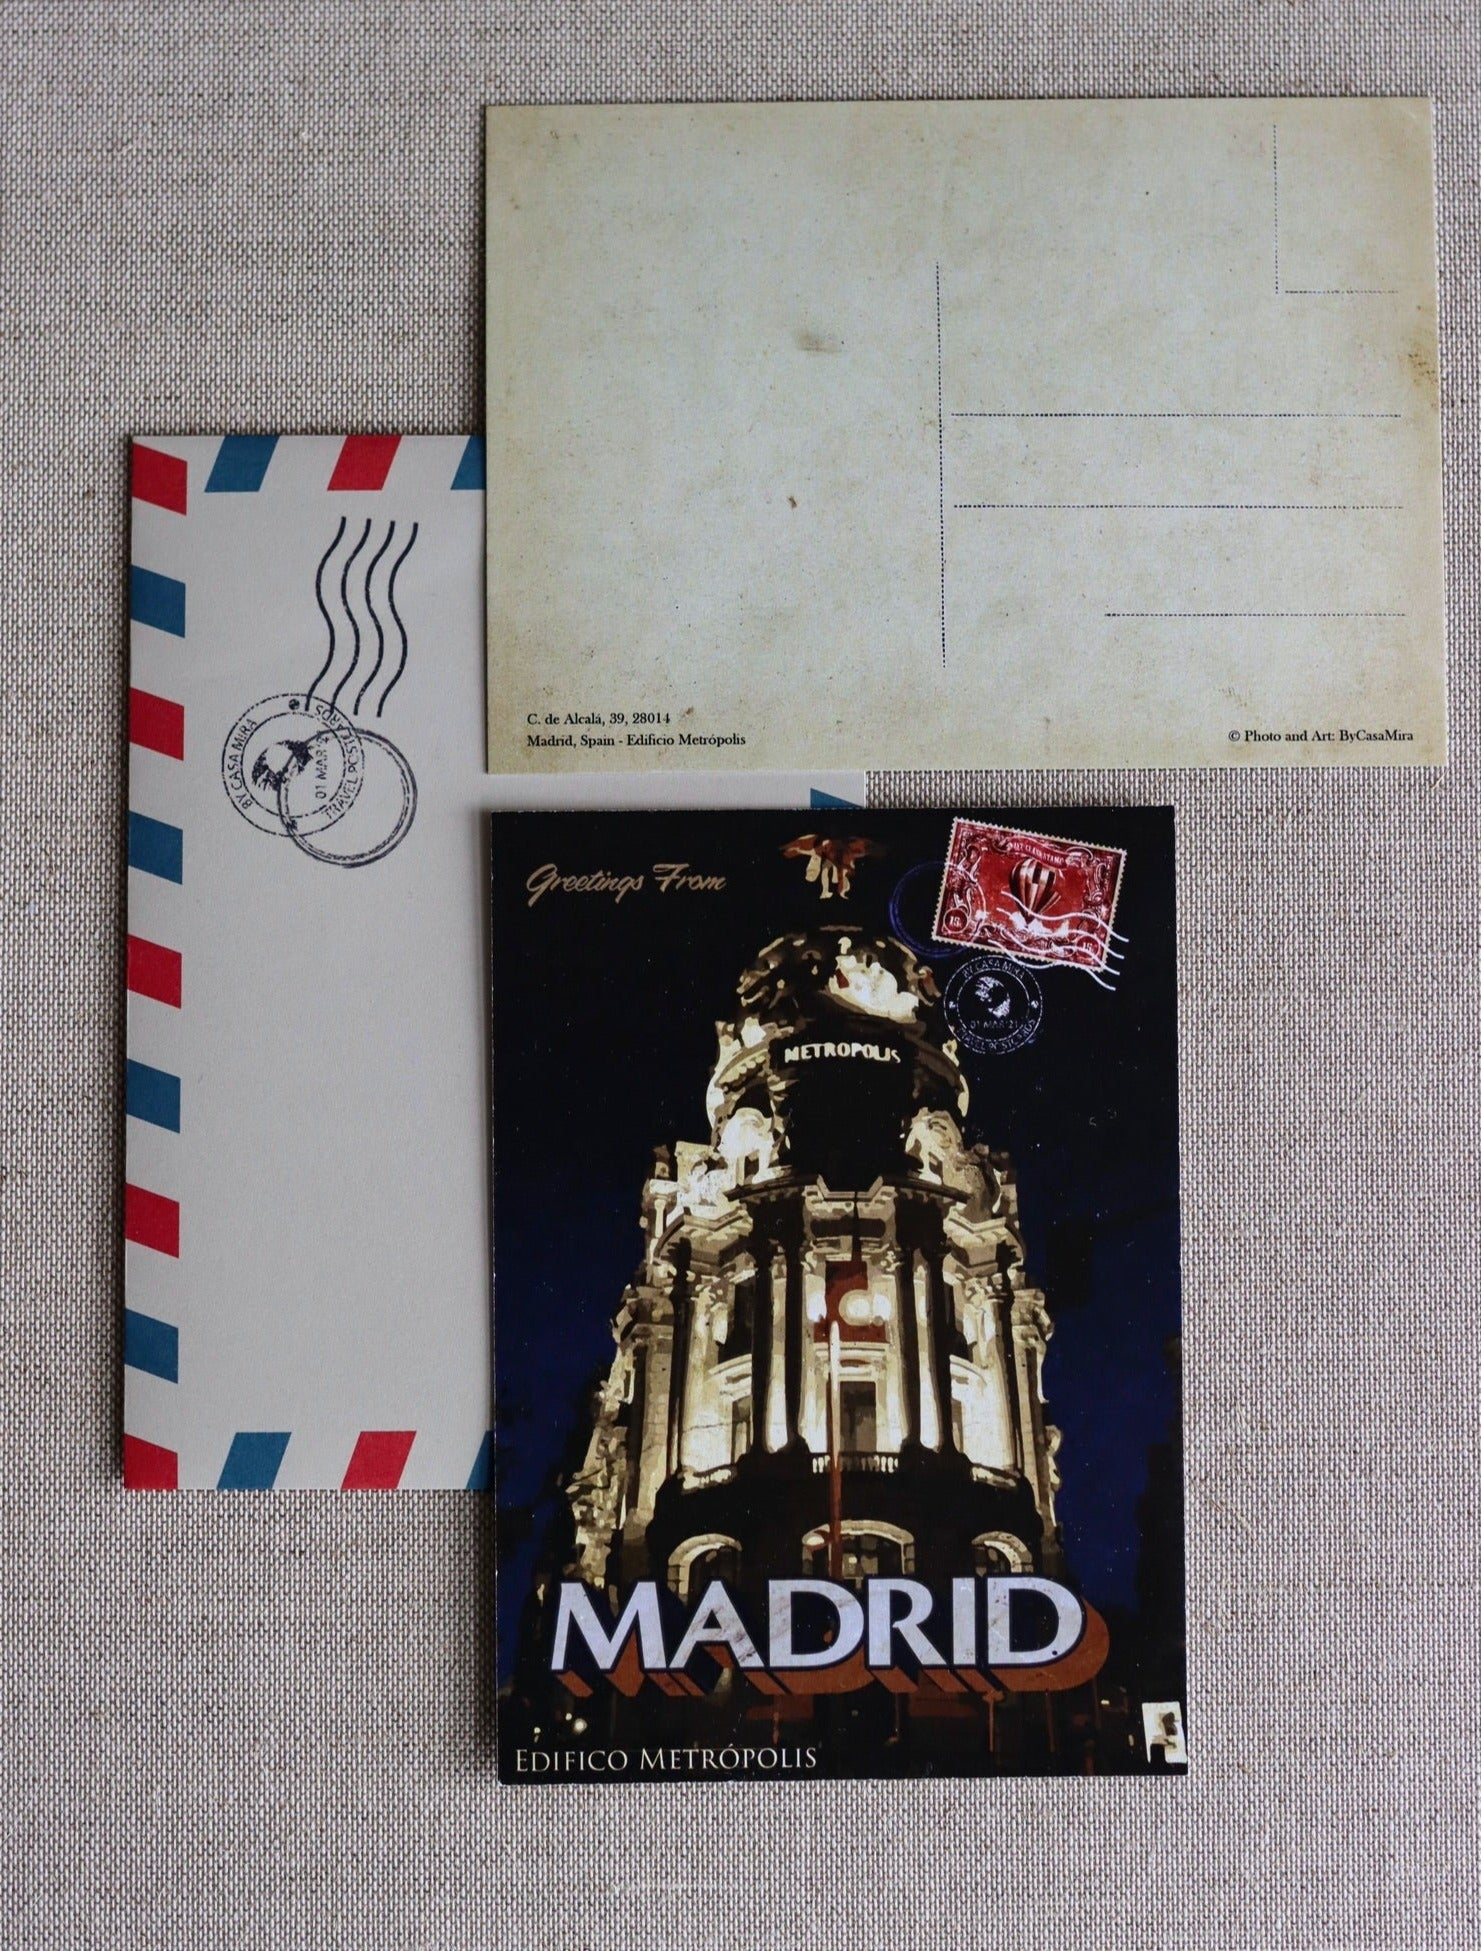 Madrid Vintage Postcard